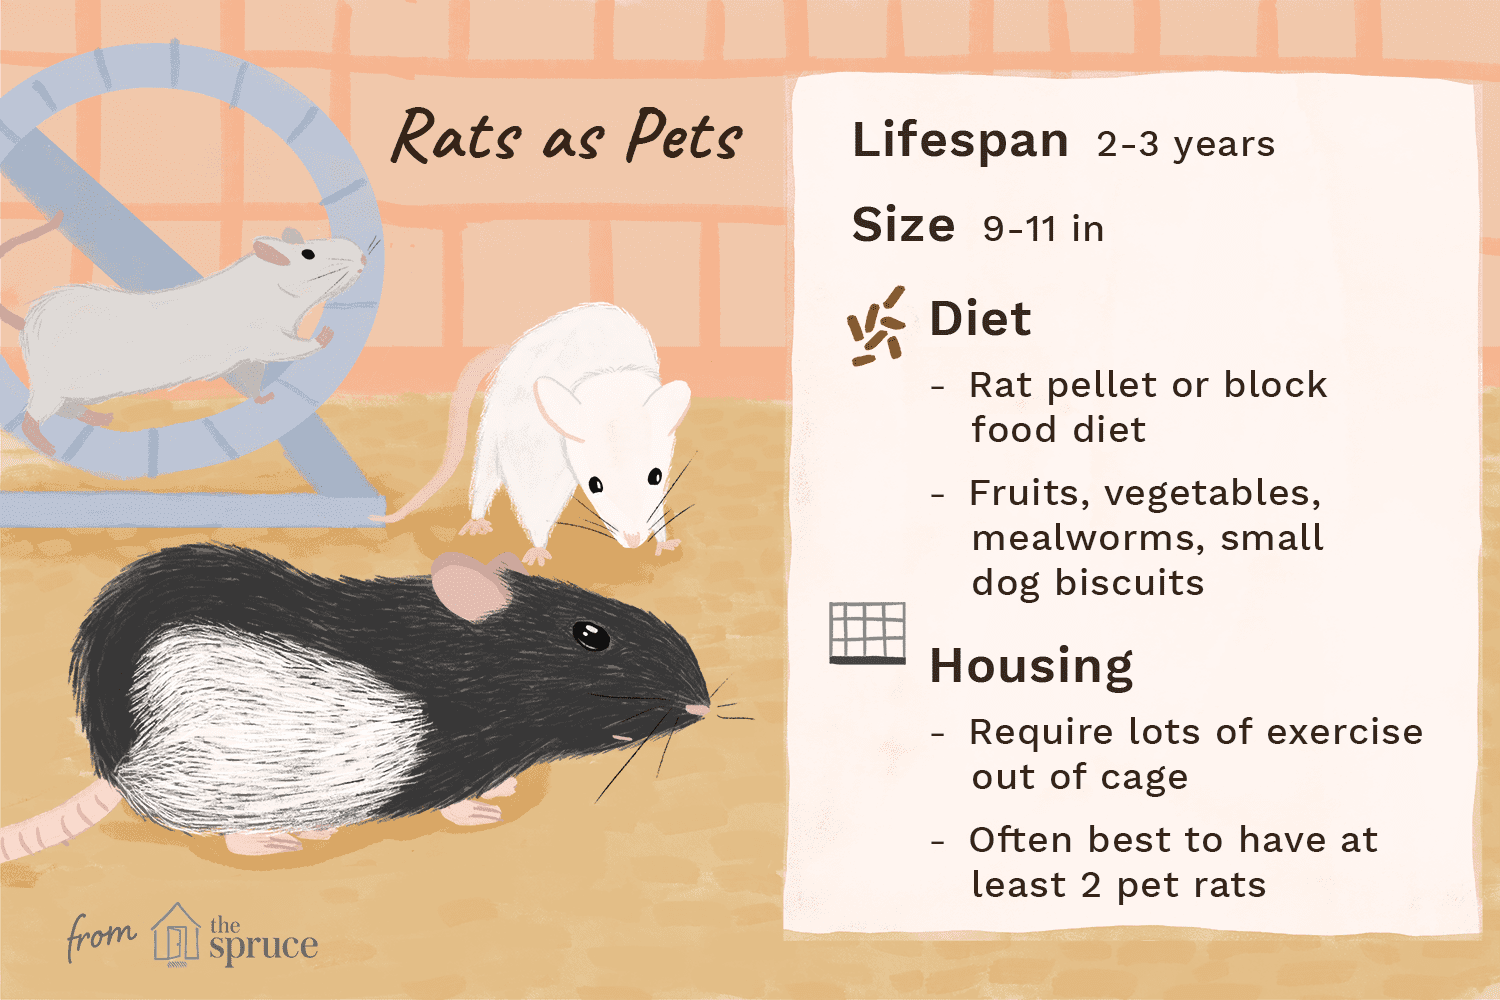 Manter e cuidar de ratos de estimação